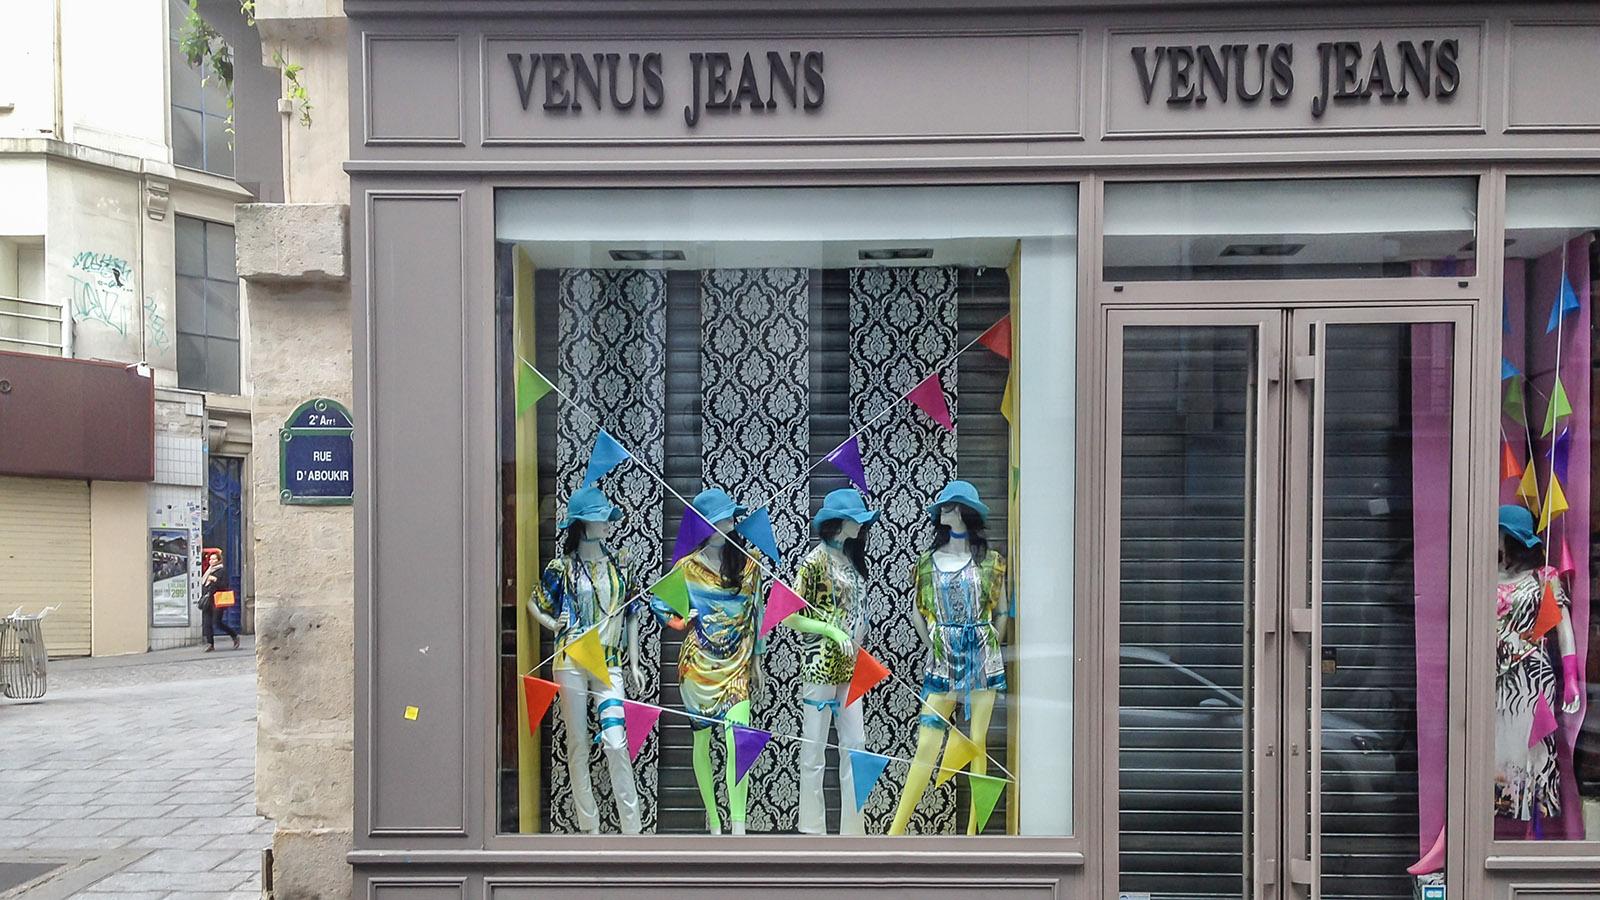 Le Sentier, 2. Arrondissement: Venus Jeans. Foto: Hilke Maunder